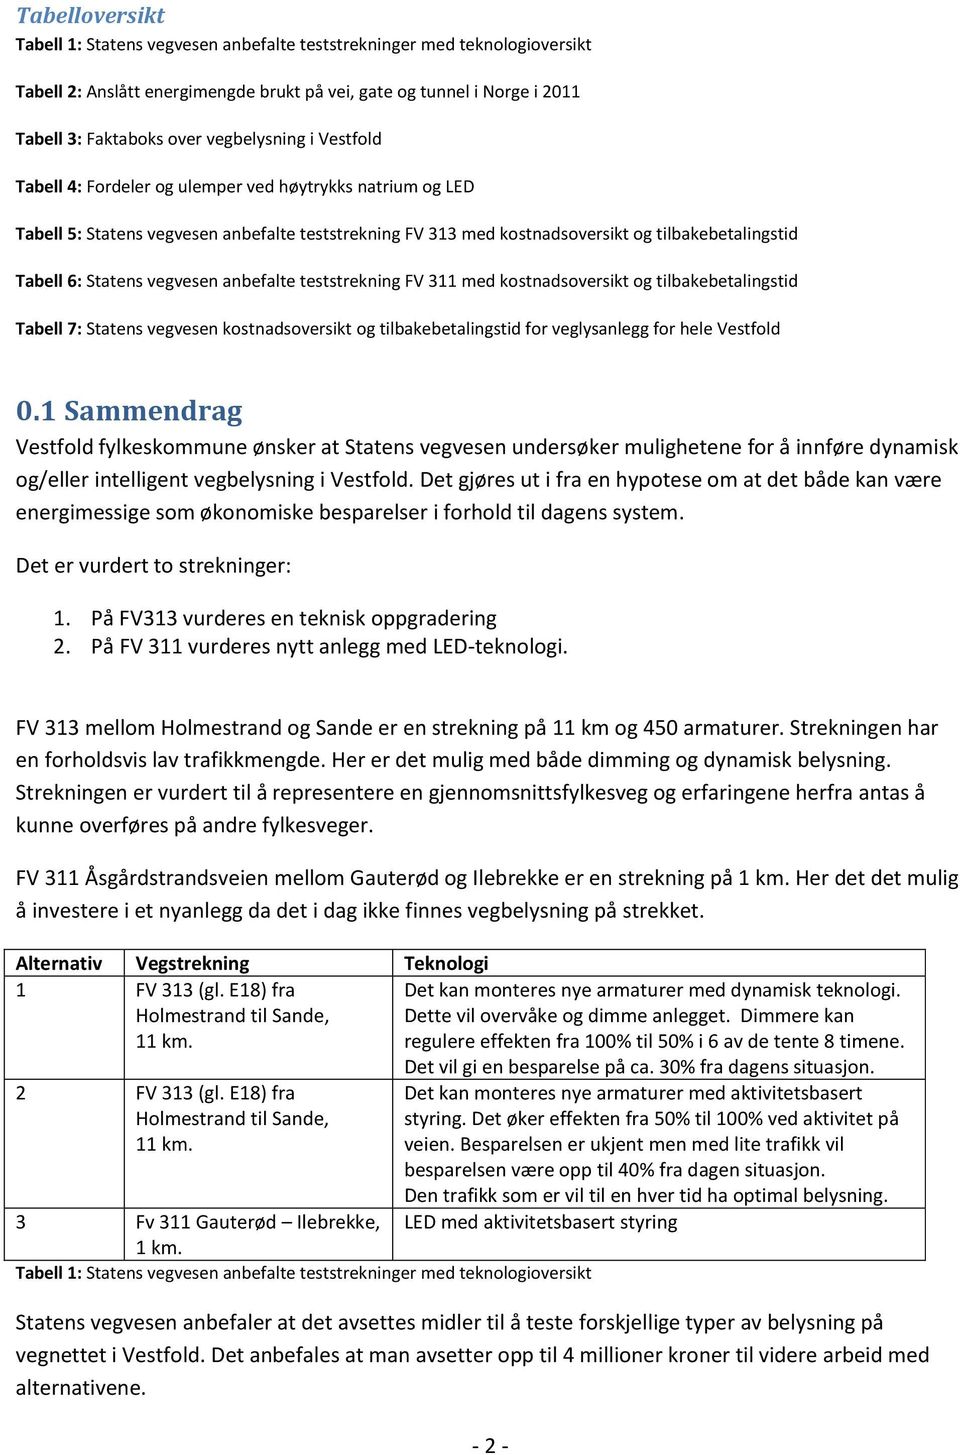 Statens vegvesen anbefalte teststrekning FV 311 med kostnadsoversikt og tilbakebetalingstid Tabell 7: Statens vegvesen kostnadsoversikt og tilbakebetalingstid for veglysanlegg for hele Vestfold 0.